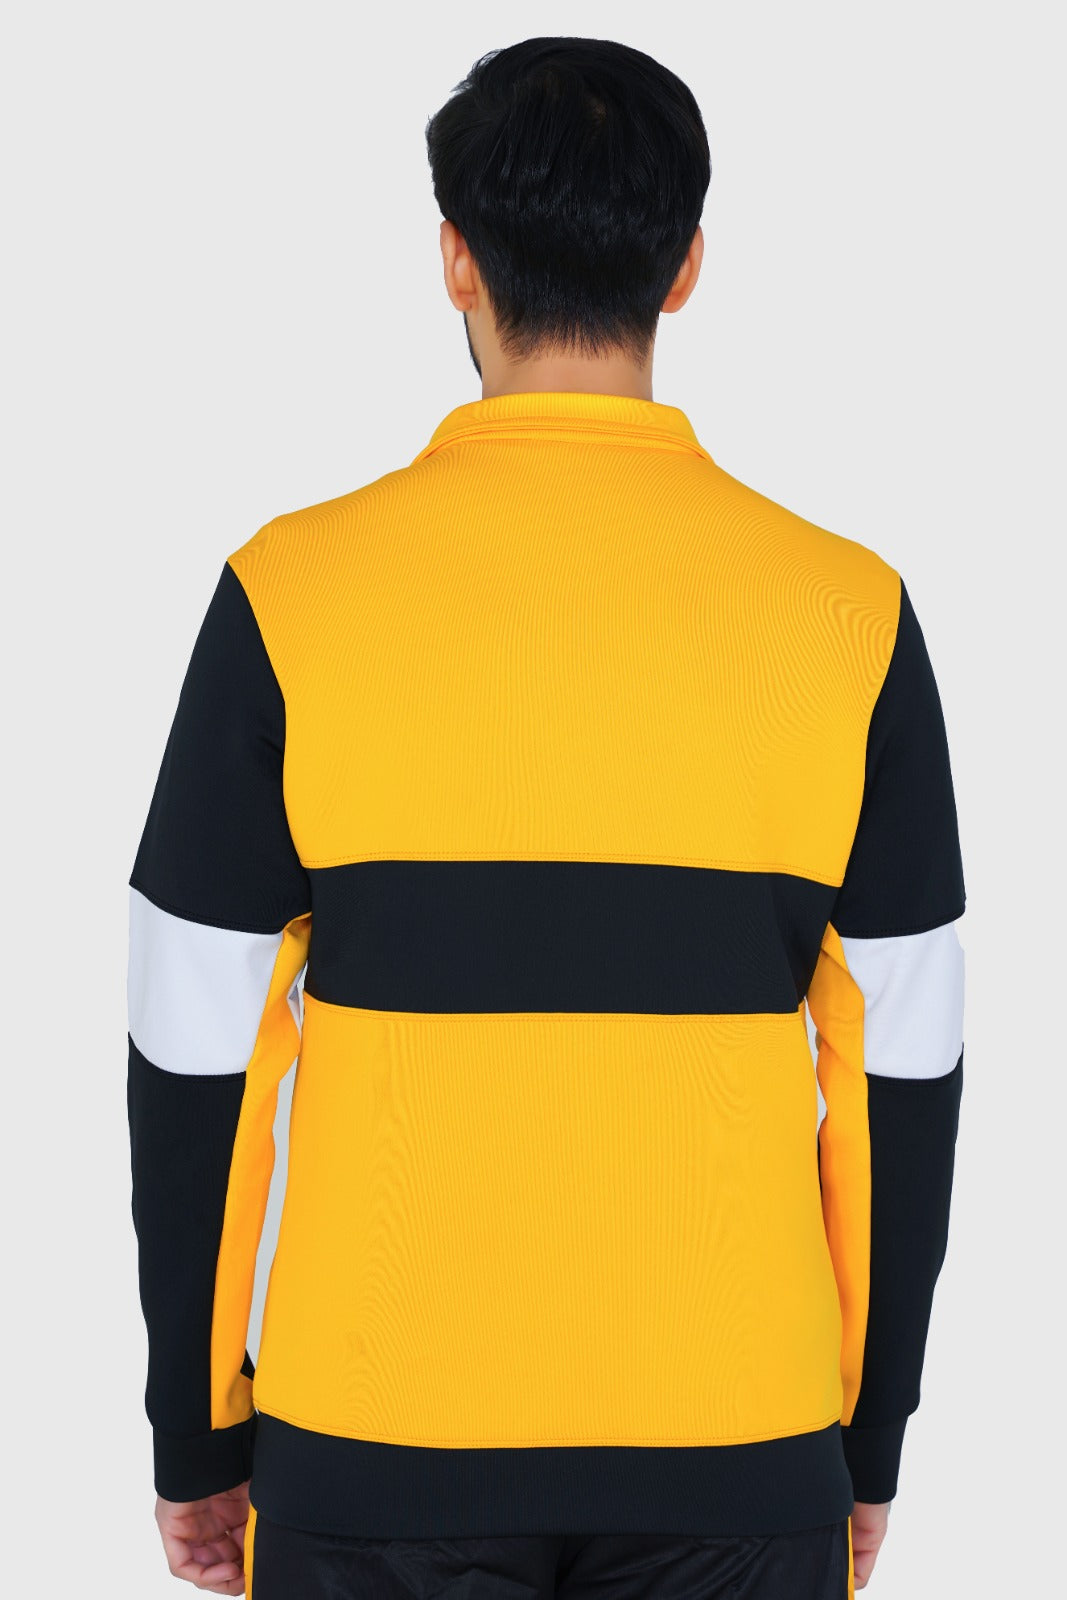 Zalmi  Premium Zipper (Yellow)